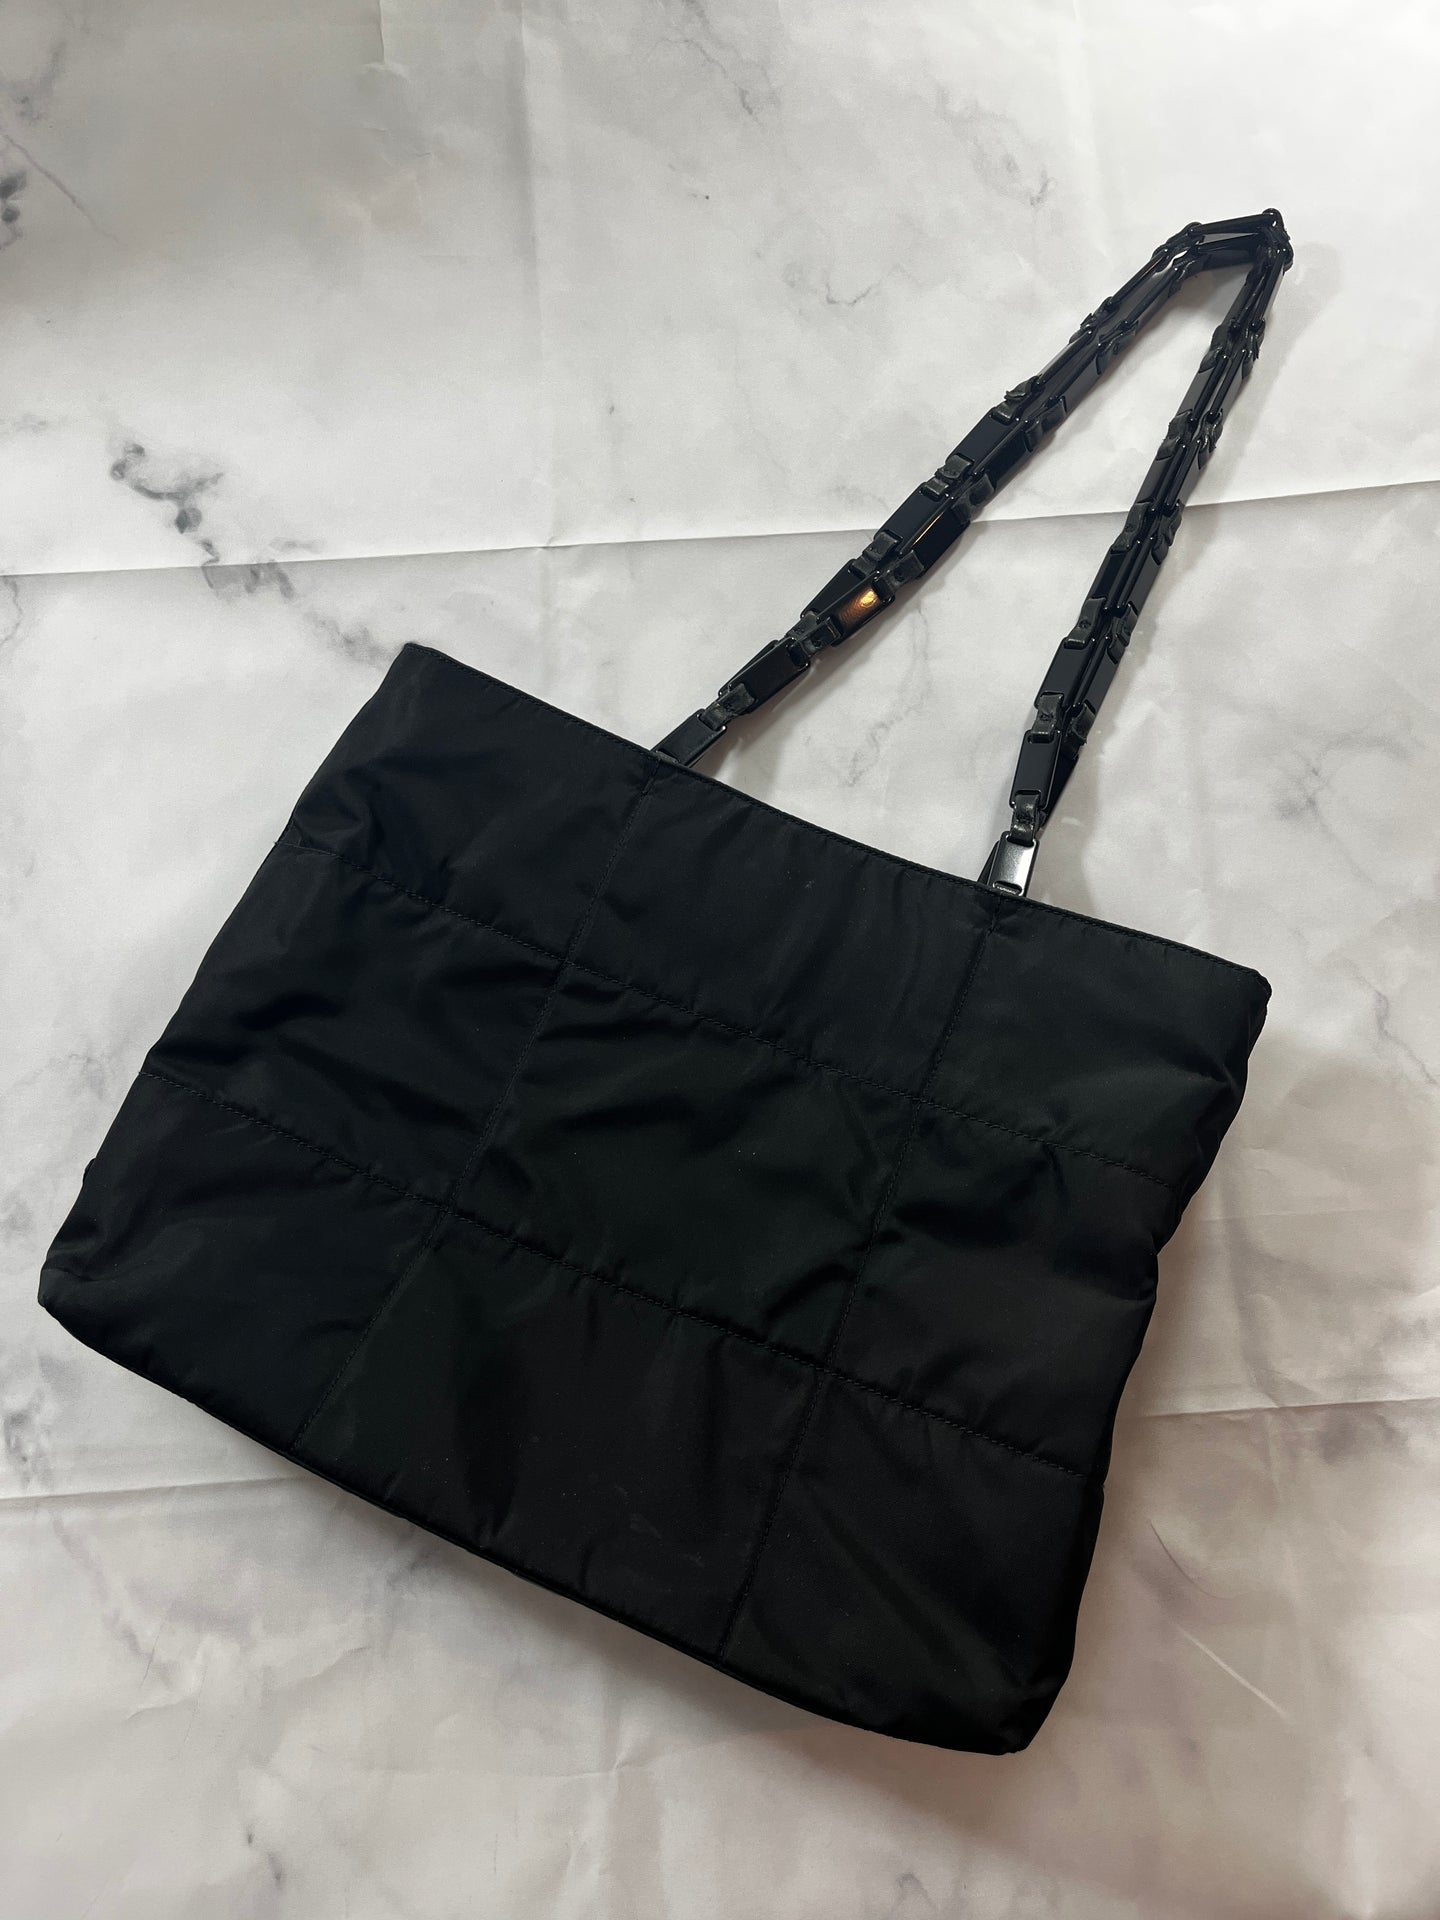 Prada Black Nylon Top Handle Tote Bag